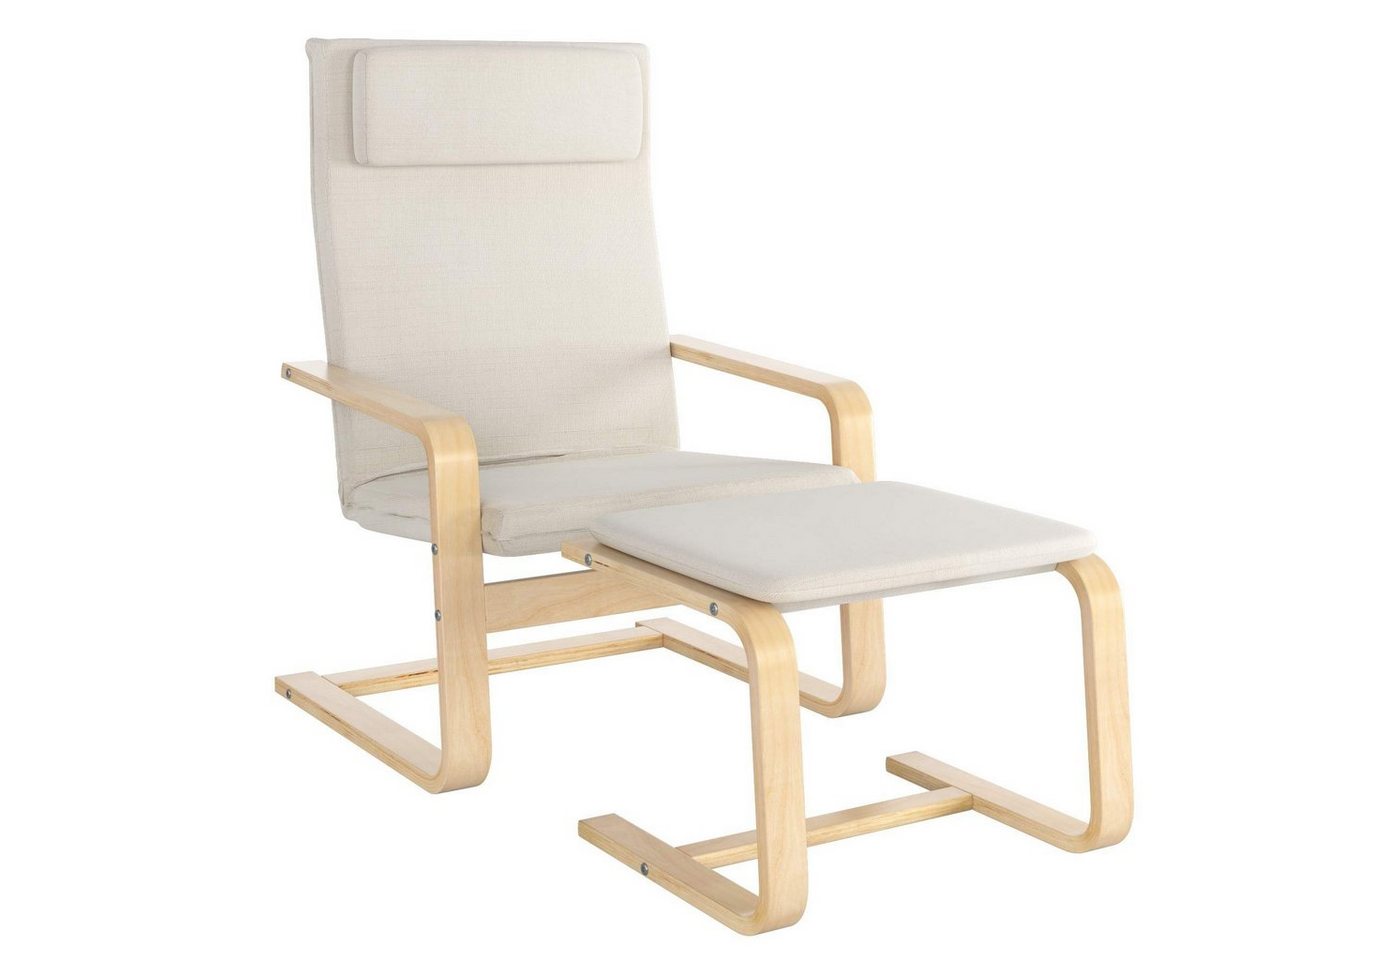 Daskoo Relaxsessel Relaxstuhl mit Fußhocker und Armlehne,66.5x69x96.5 cm (Relaxsessel mit hocker), Sessel Armlehnensessel aus Birkenholz von Daskoo